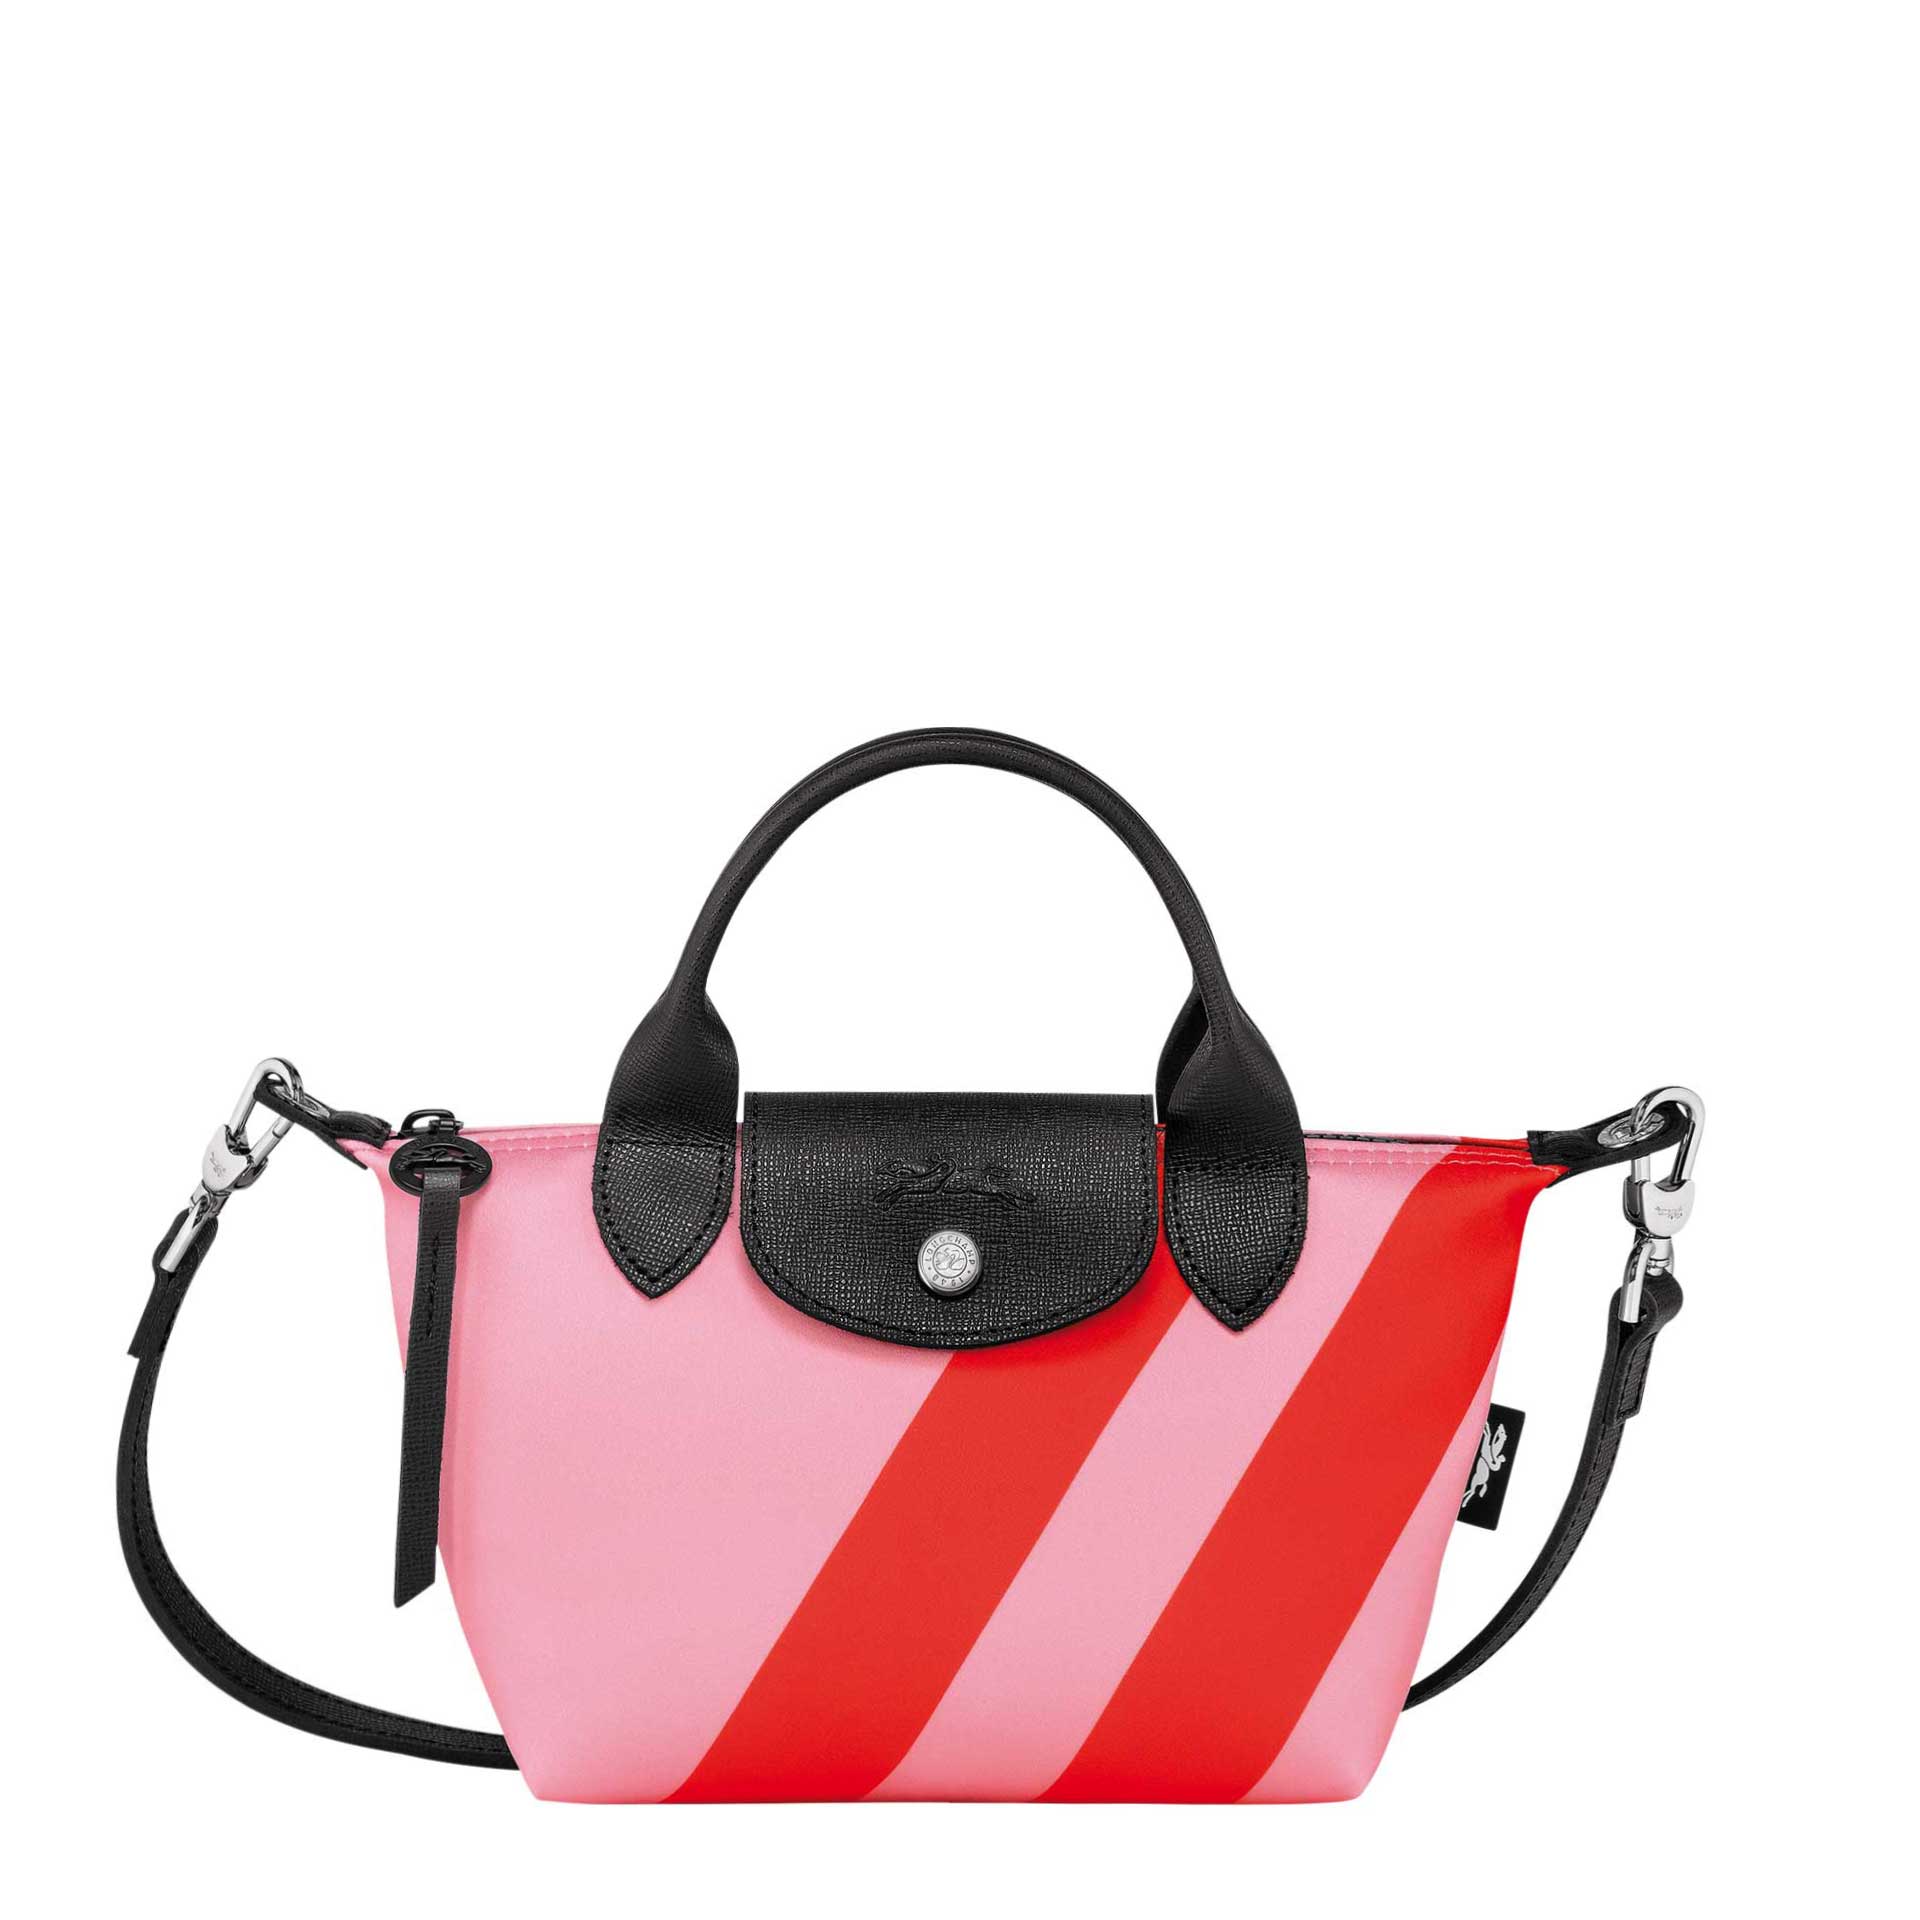 Longchamp Le Pliage Collection Handtasche XS pink/orange